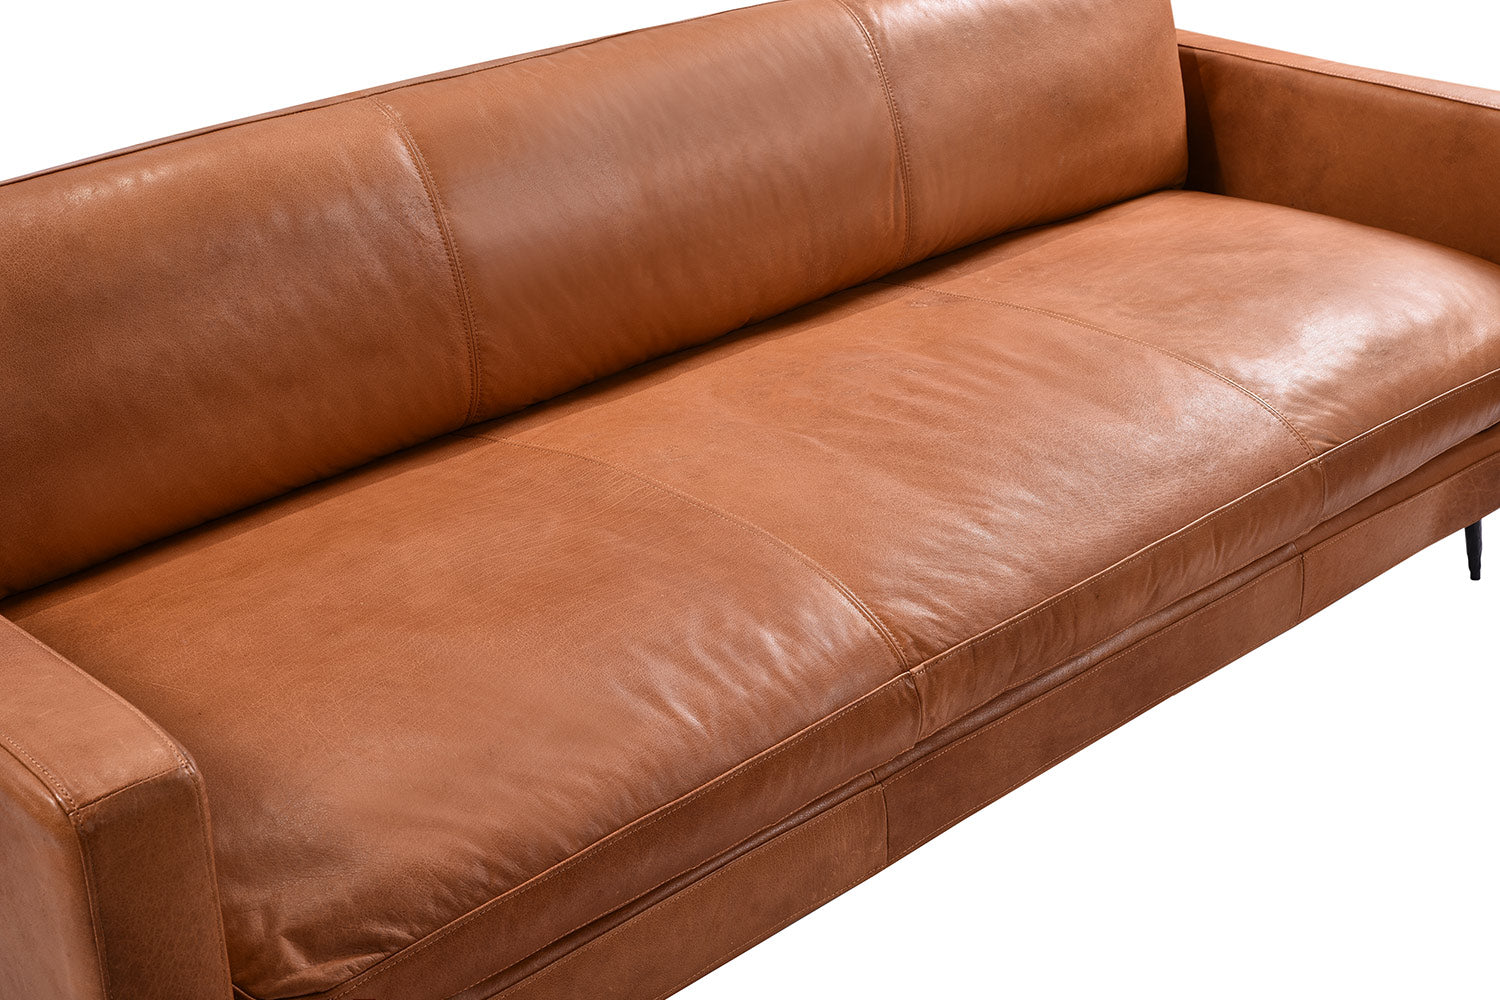 saddle leather sofa canada